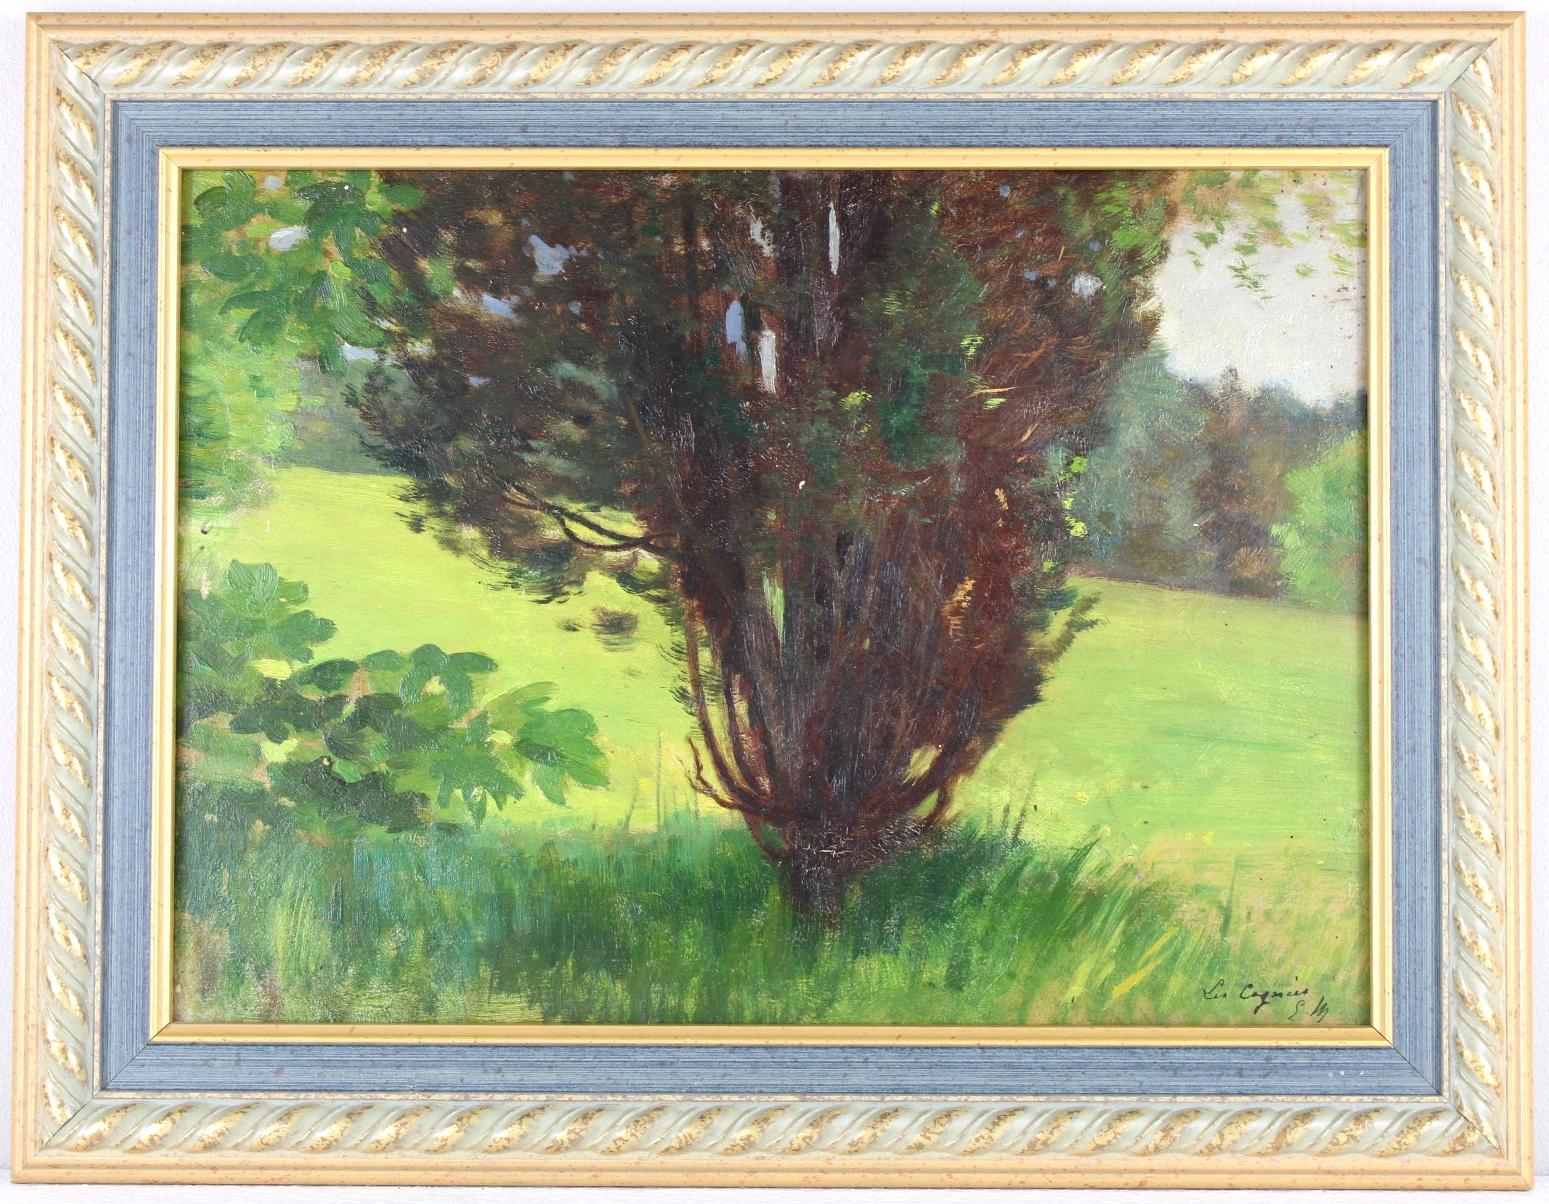 Landscape, Original Oil on Panel, Impressionist Émile Louis Thivier (1858-1922)